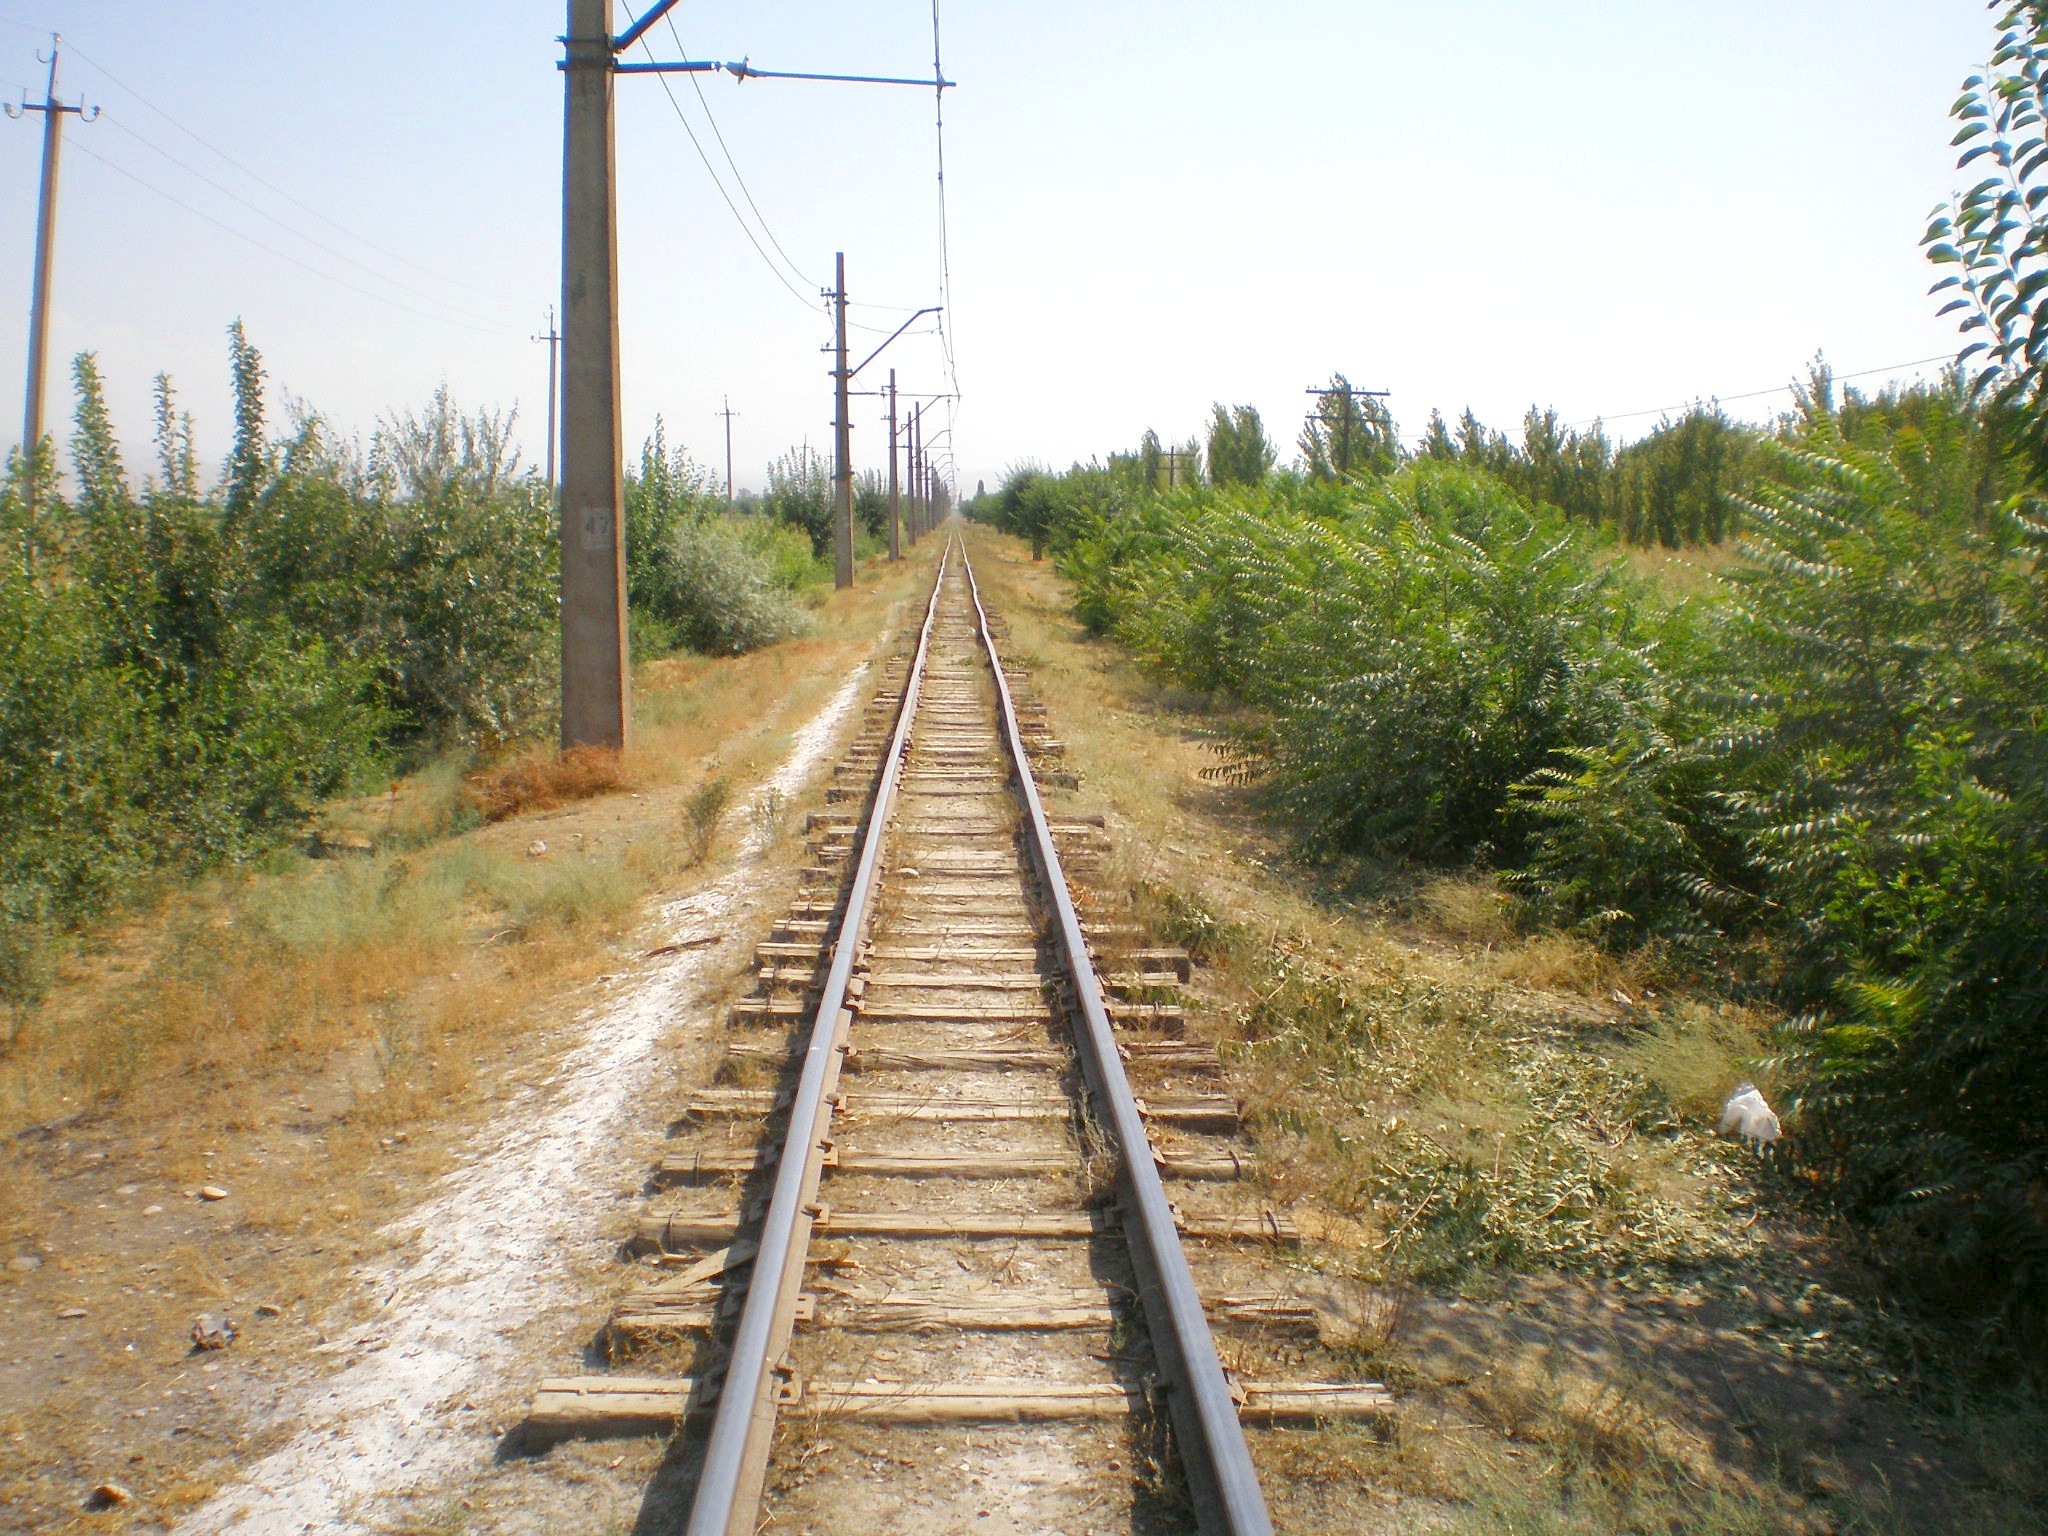 Сулюктинская узкоколейная железная дорога  —  фотографии, сделанные в 2008 году (часть 18)